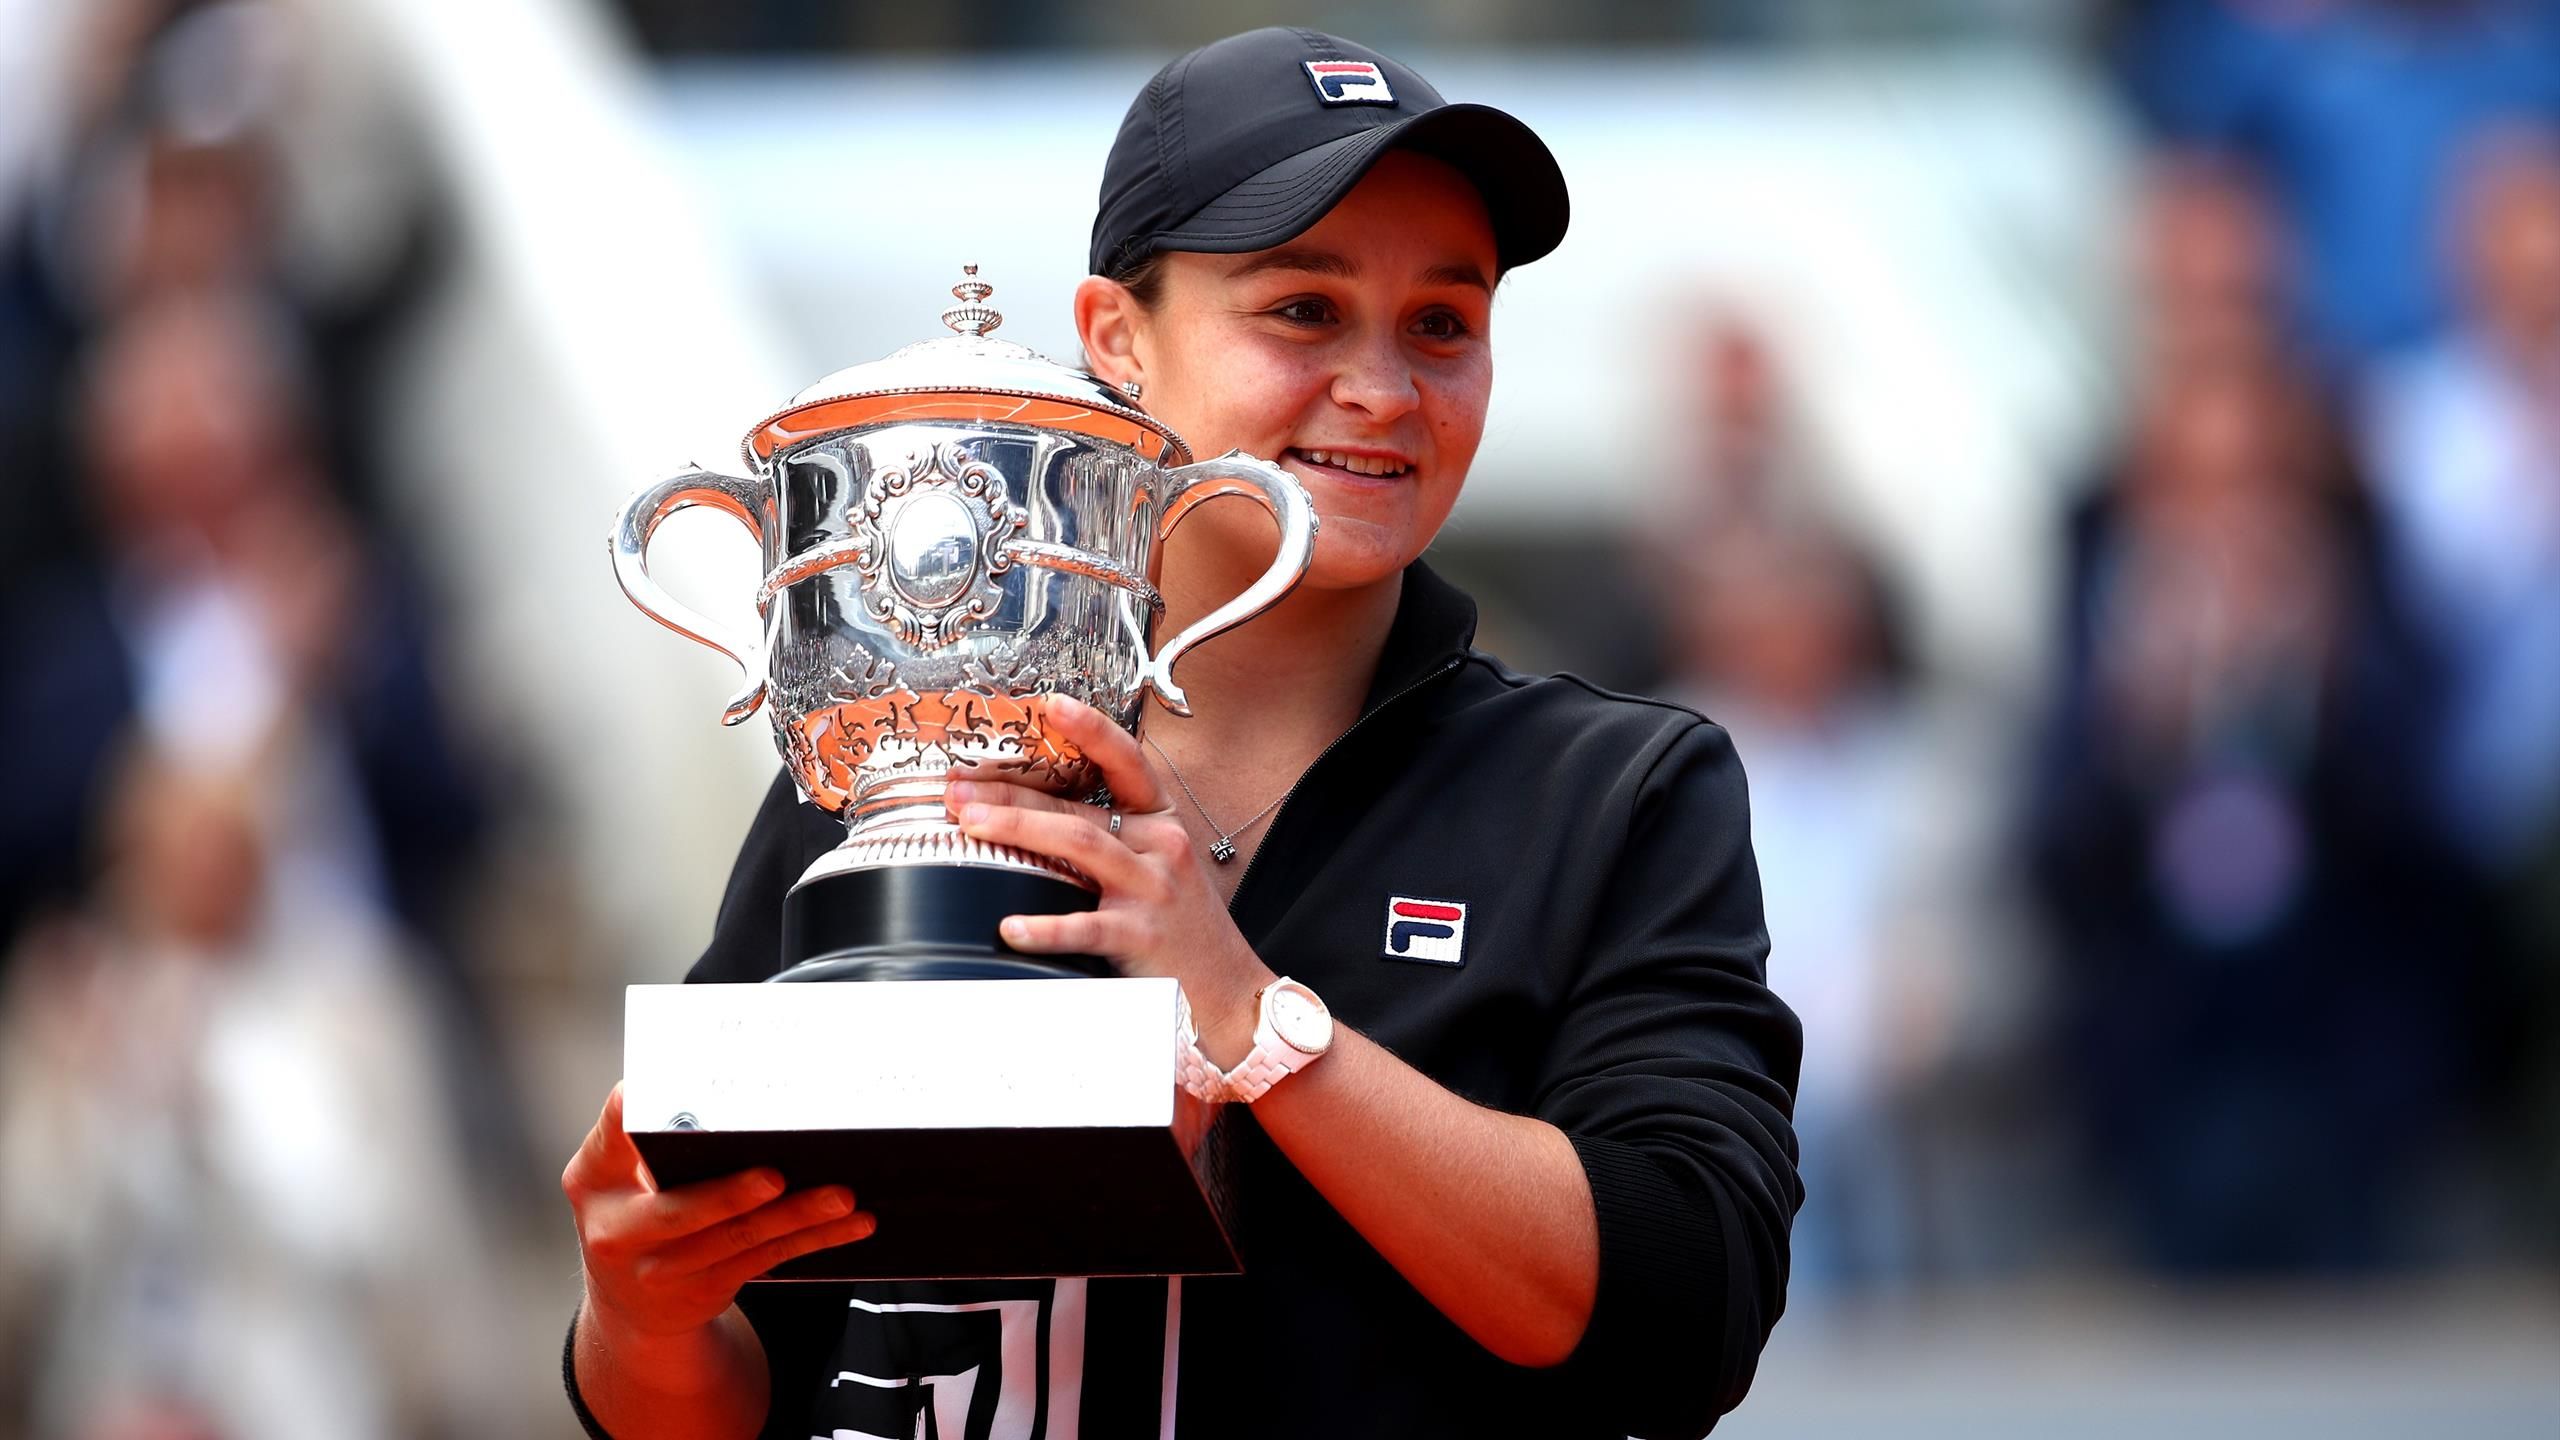 French Open 2019 Ashleigh Barty Gewinnt Finale Gegen Market Vondrousova Eurosport